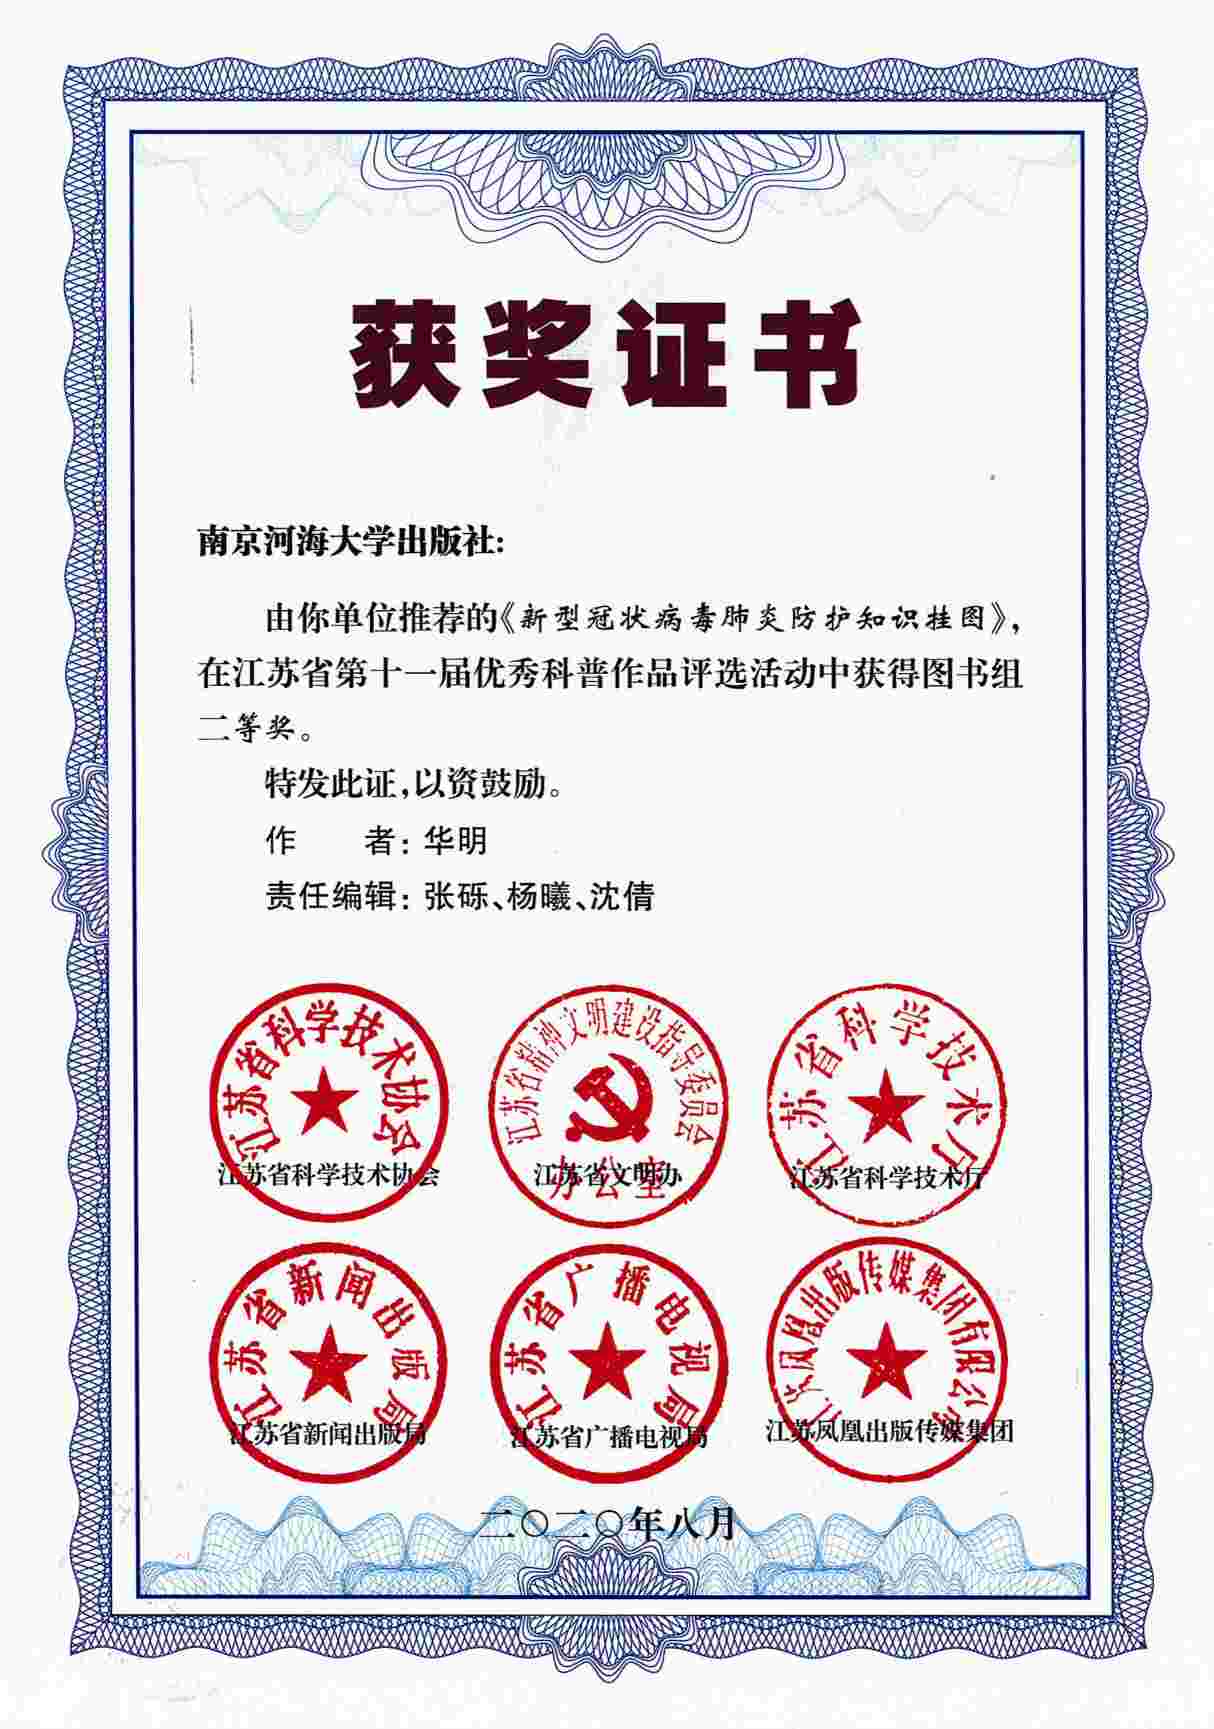 在江苏省第十一届优秀科普作品评选活动中获得图书组二等奖.jpg